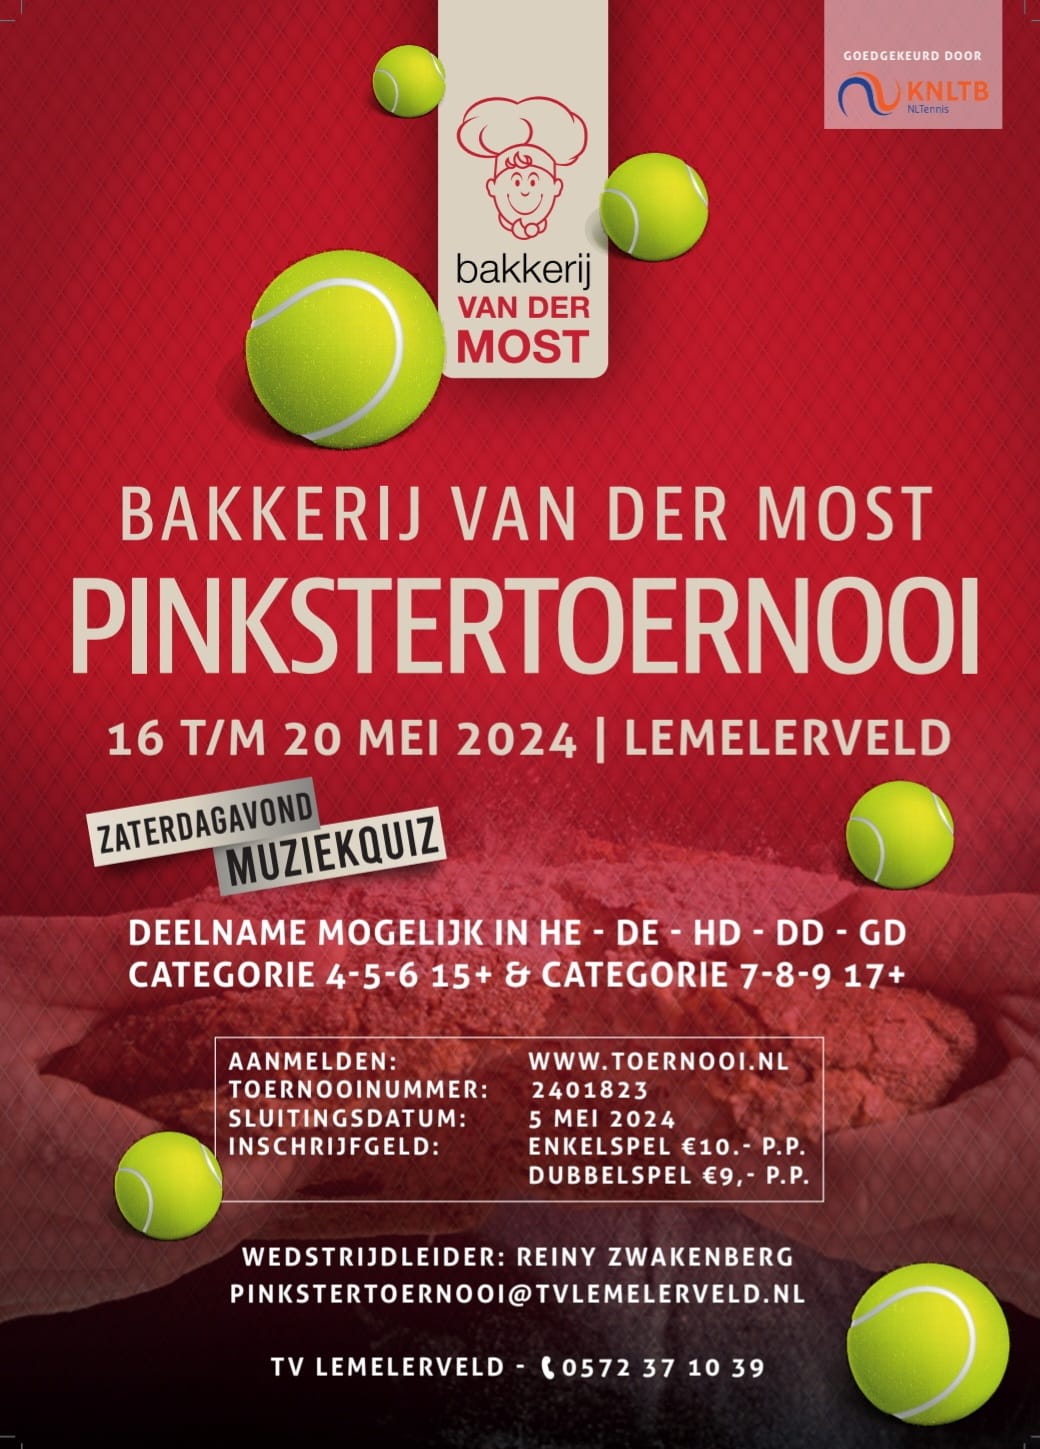 Bakkerij van der Most Pinkstertoernooi in Lemelerveld